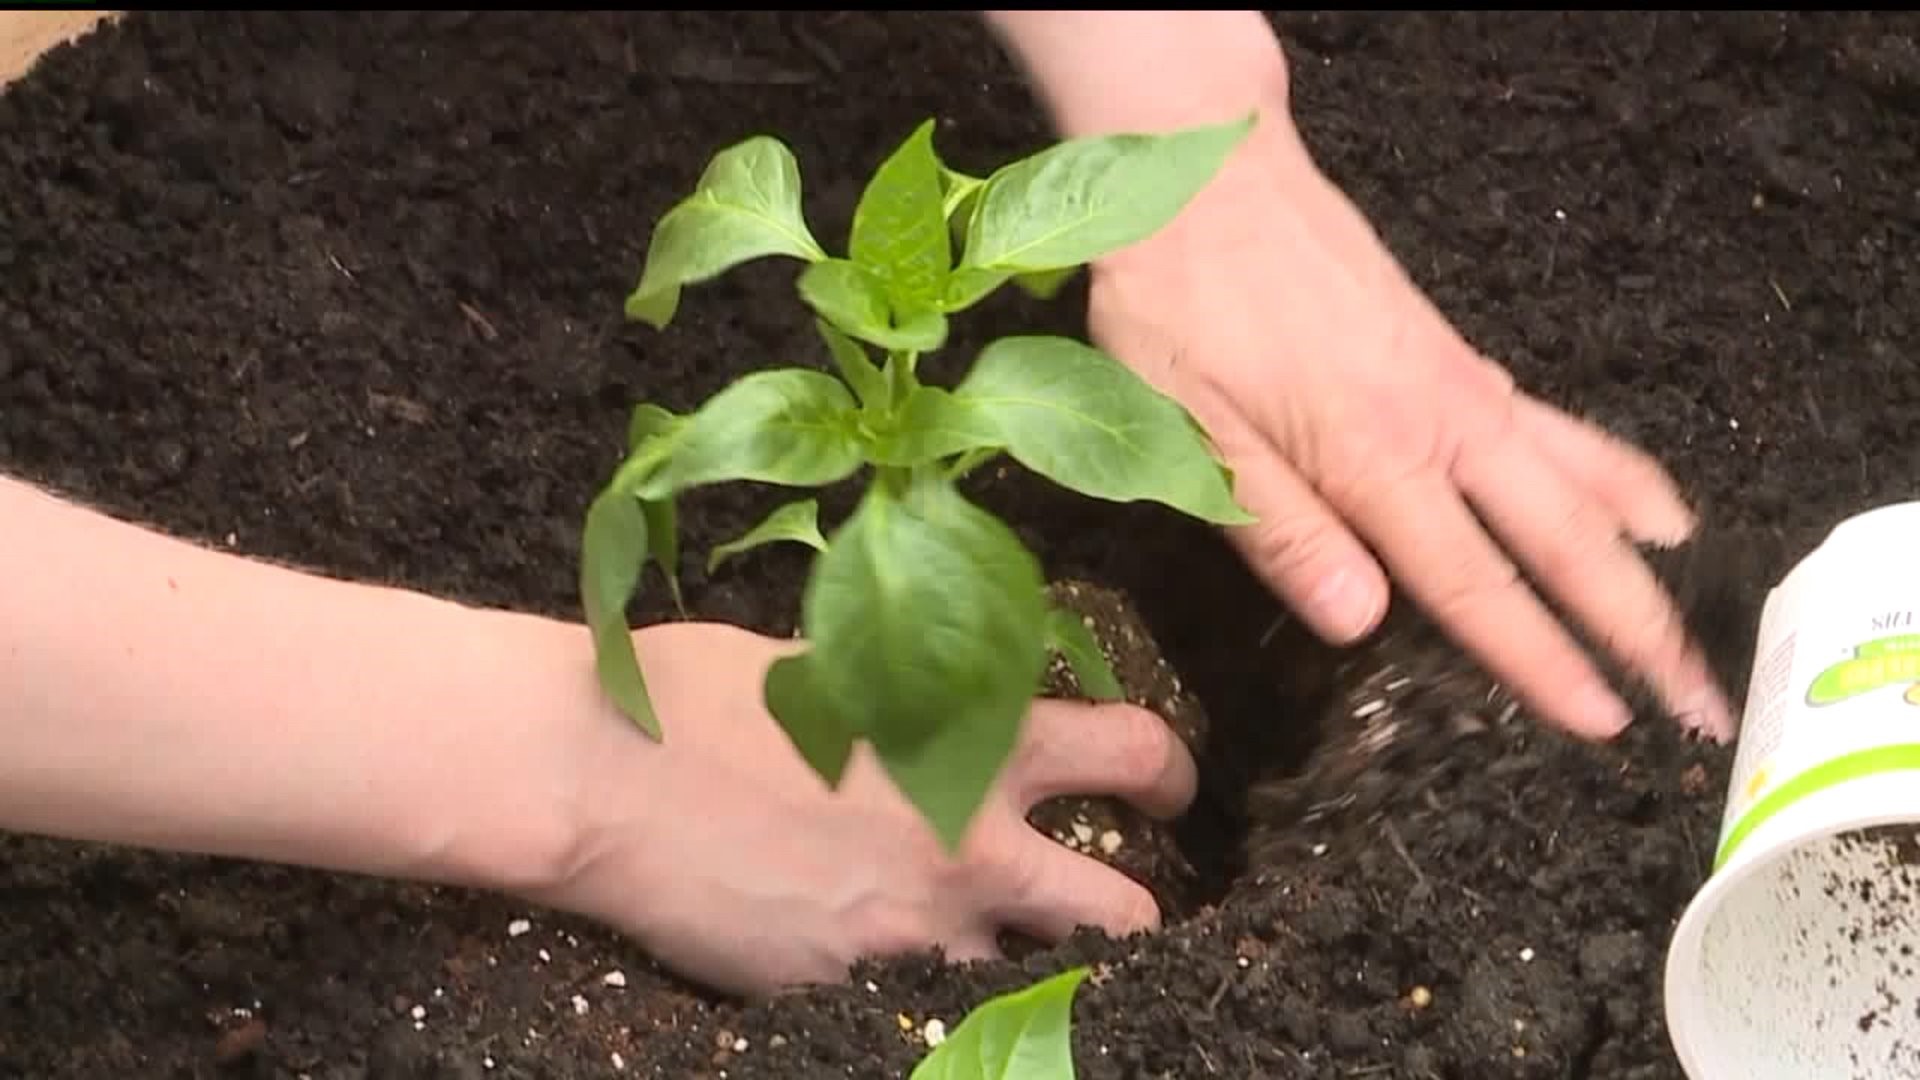 Volunteers build community garden in Lancaster